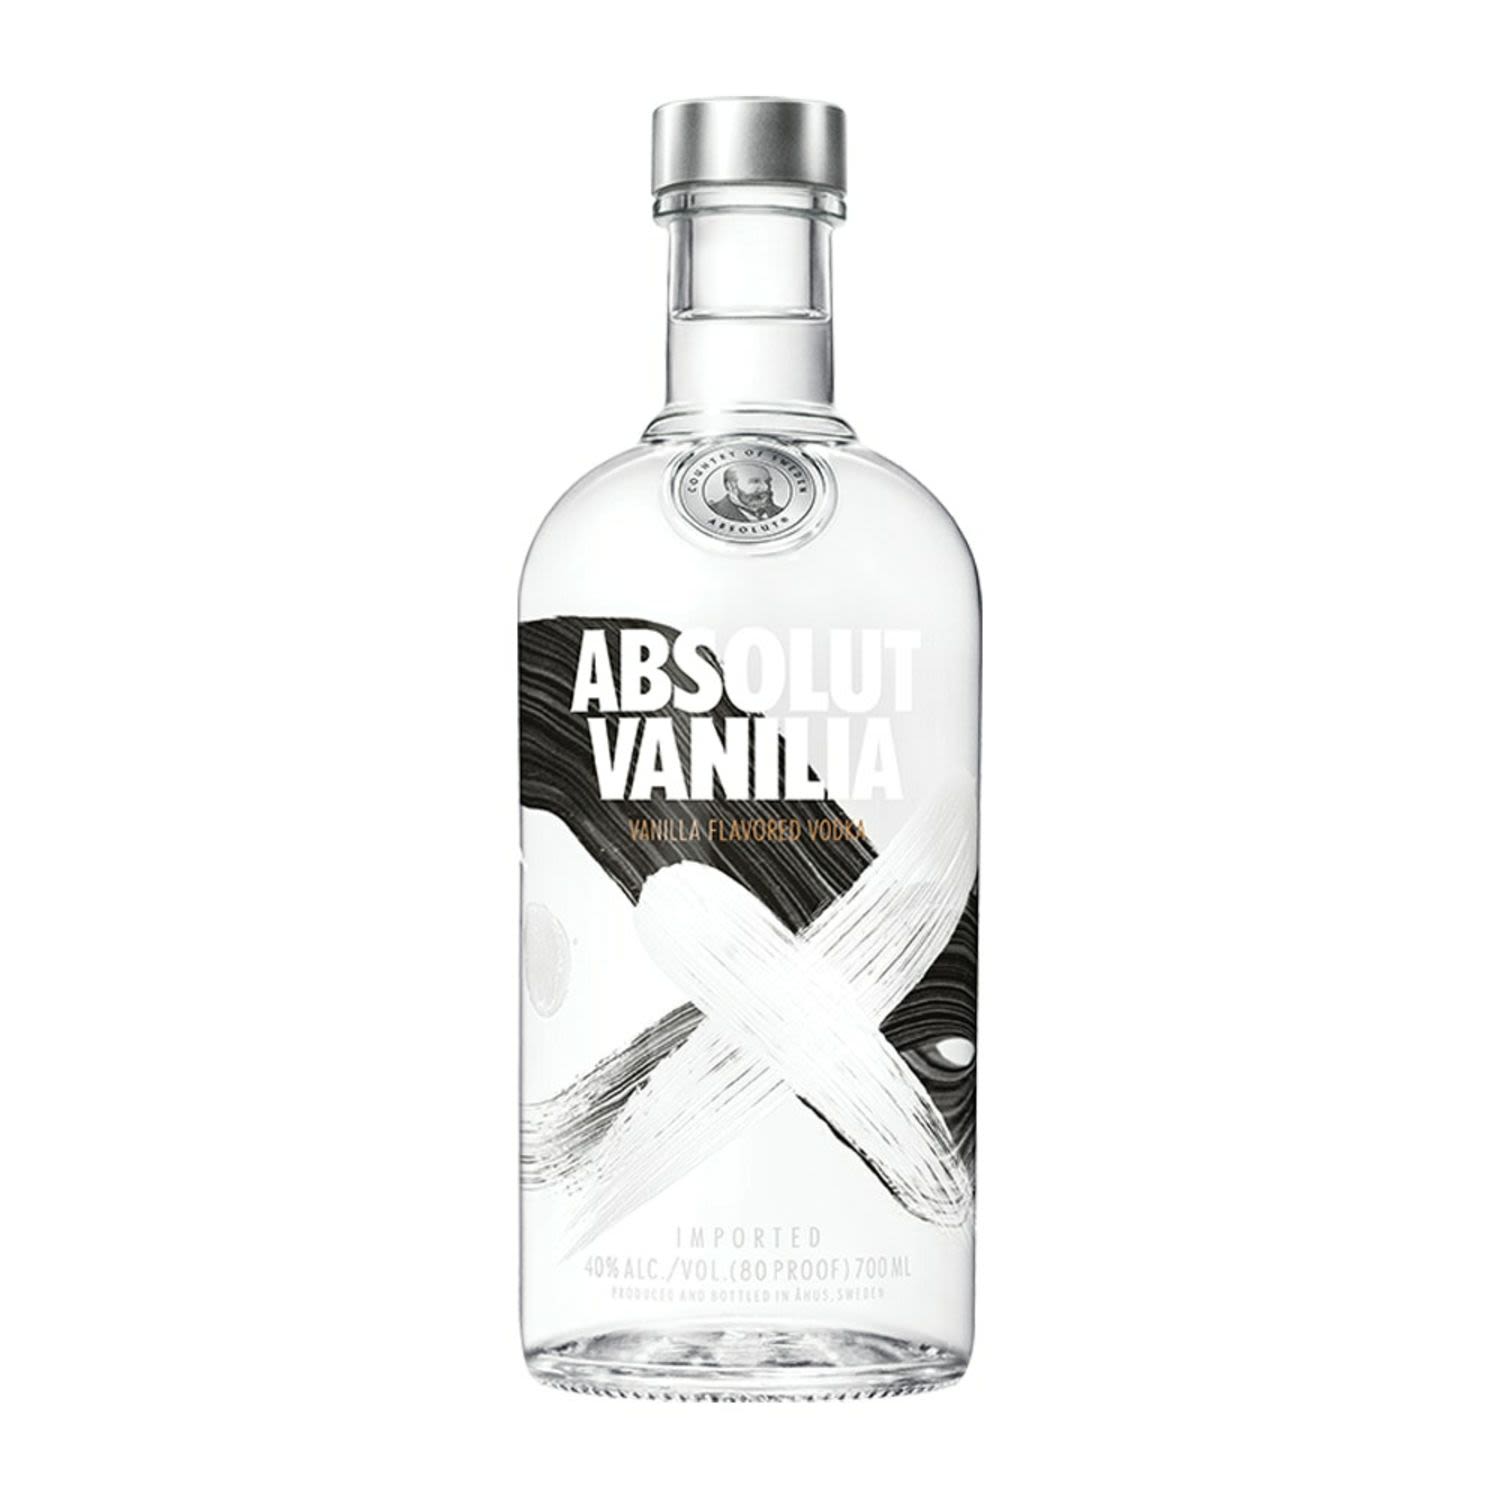 Absolut Vanilia Vodka 700mL Bottle